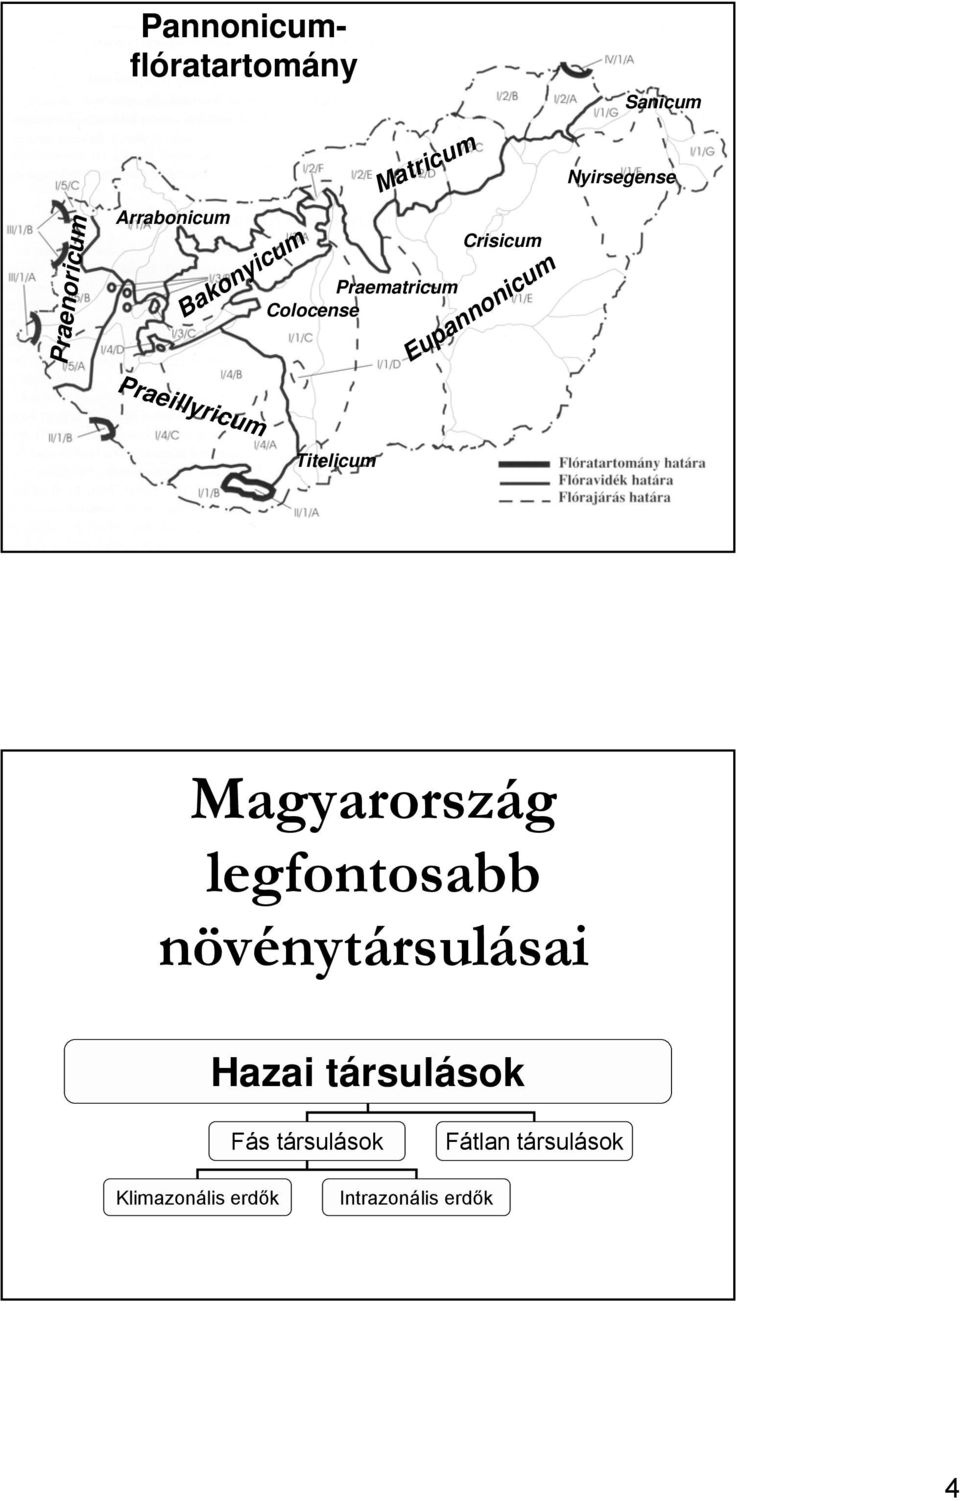 Nyirsegense Titelicum Magyarország legfontosabb növénytársulásai Hazai